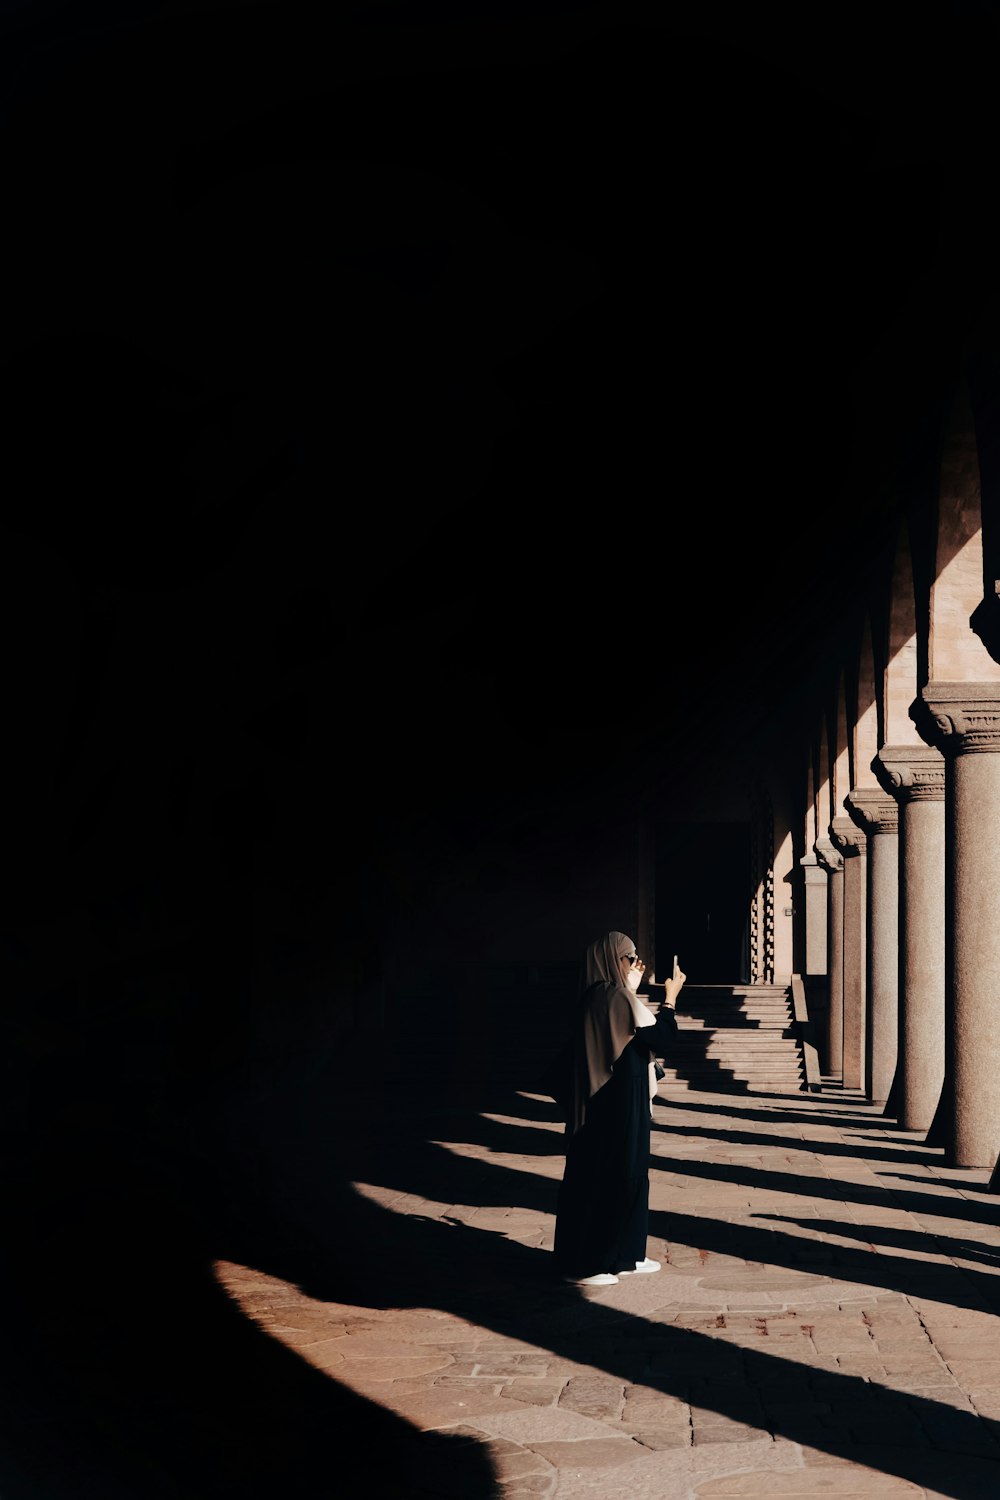 Une femme dans une longue robe noire debout dans une longue rangée de colonnes